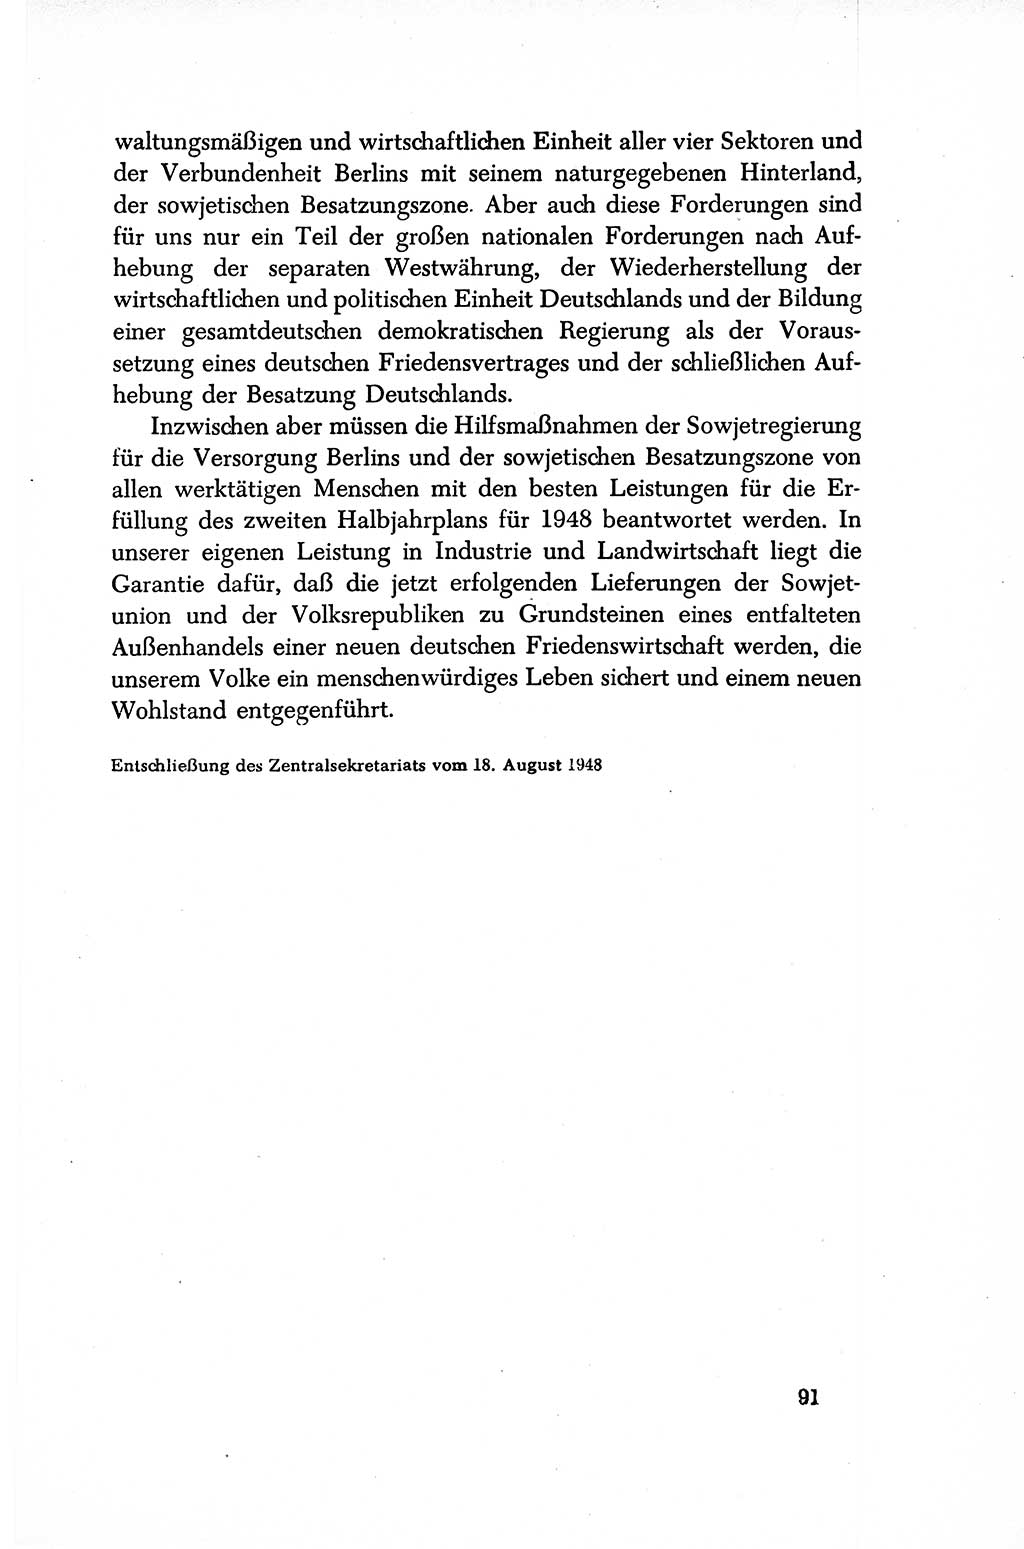 Dokumente der Sozialistischen Einheitspartei Deutschlands (SED) [Sowjetische Besatzungszone (SBZ) Deutschlands/Deutsche Demokratische Republik (DDR)] 1948-1950, Seite 91 (Dok. SED SBZ Dtl. DDR 1948-1950, S. 91)